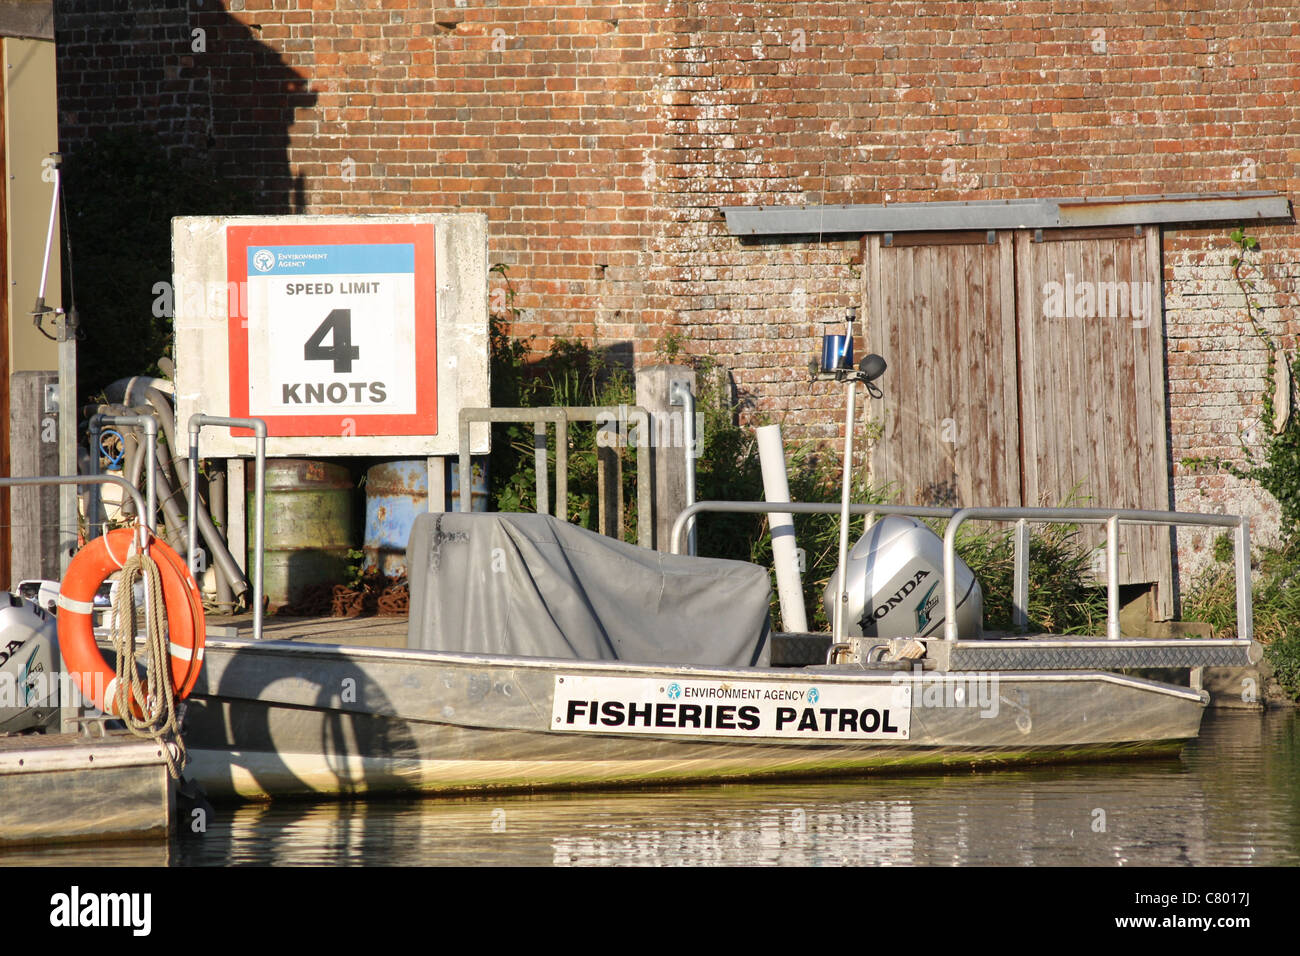 Wareham Dorset Agence de l'environnement Patrouille de pêche sur la rivière Frome Wareham Dorset. Bateau amarré par 4 noeuds de limite de vitesse de rivière signe Banque D'Images